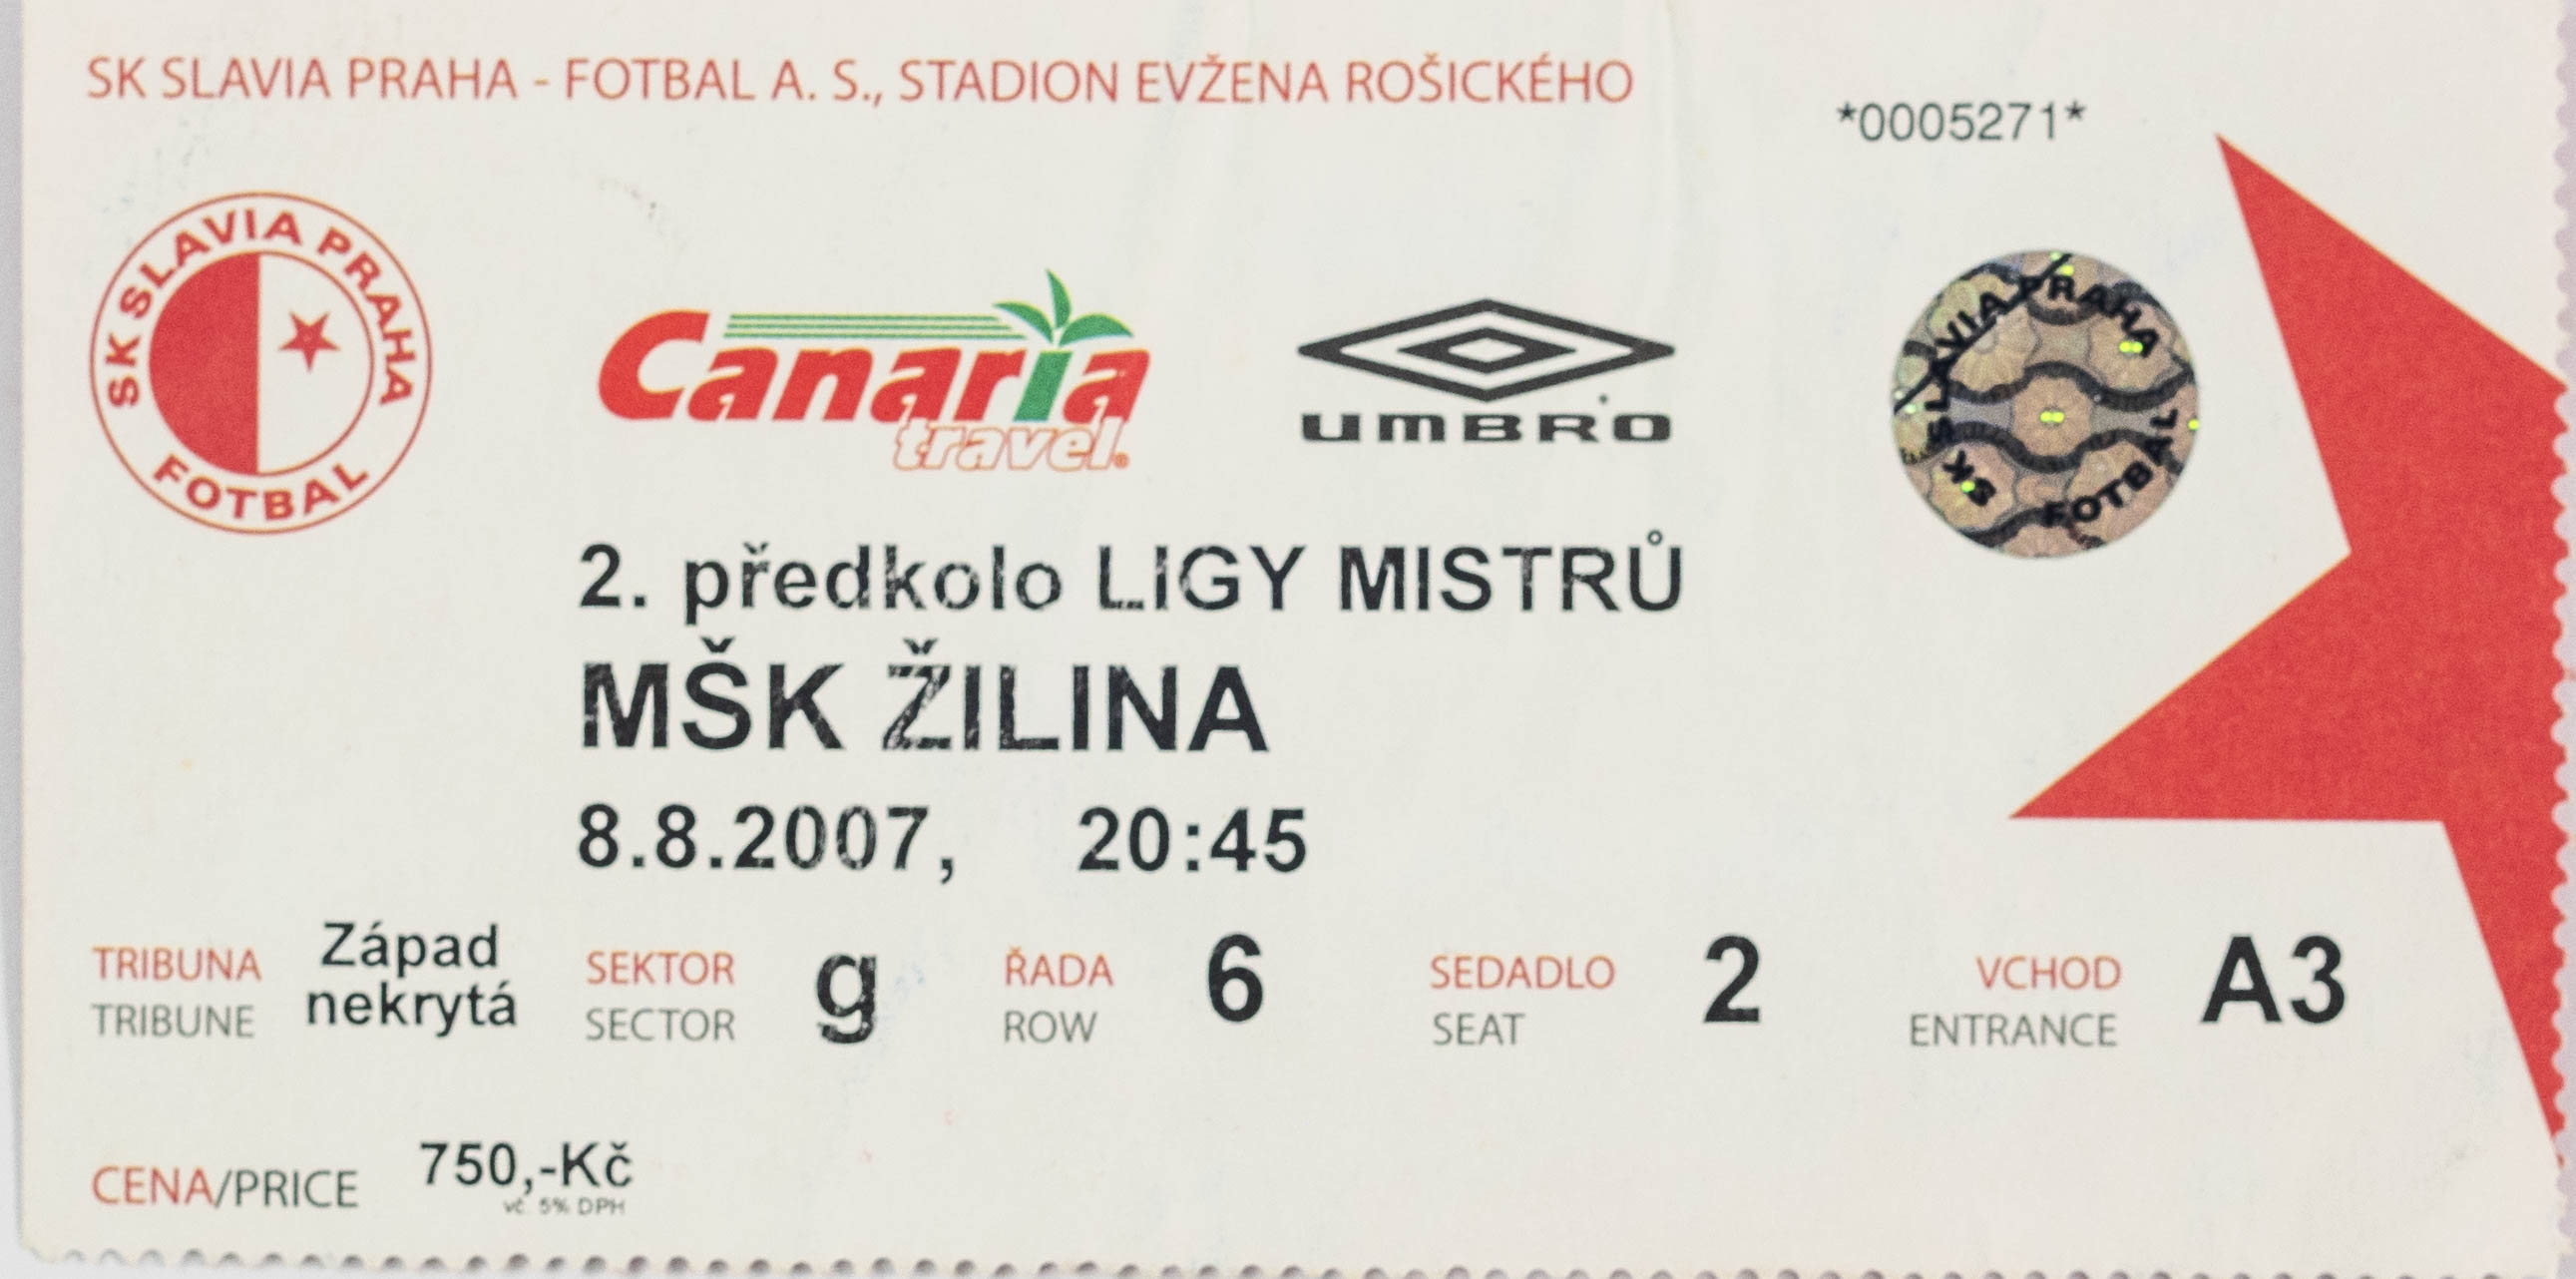 Vstupenka fotbal SK Slavia Praha vs. MŠK Žilina, 2007 (2)